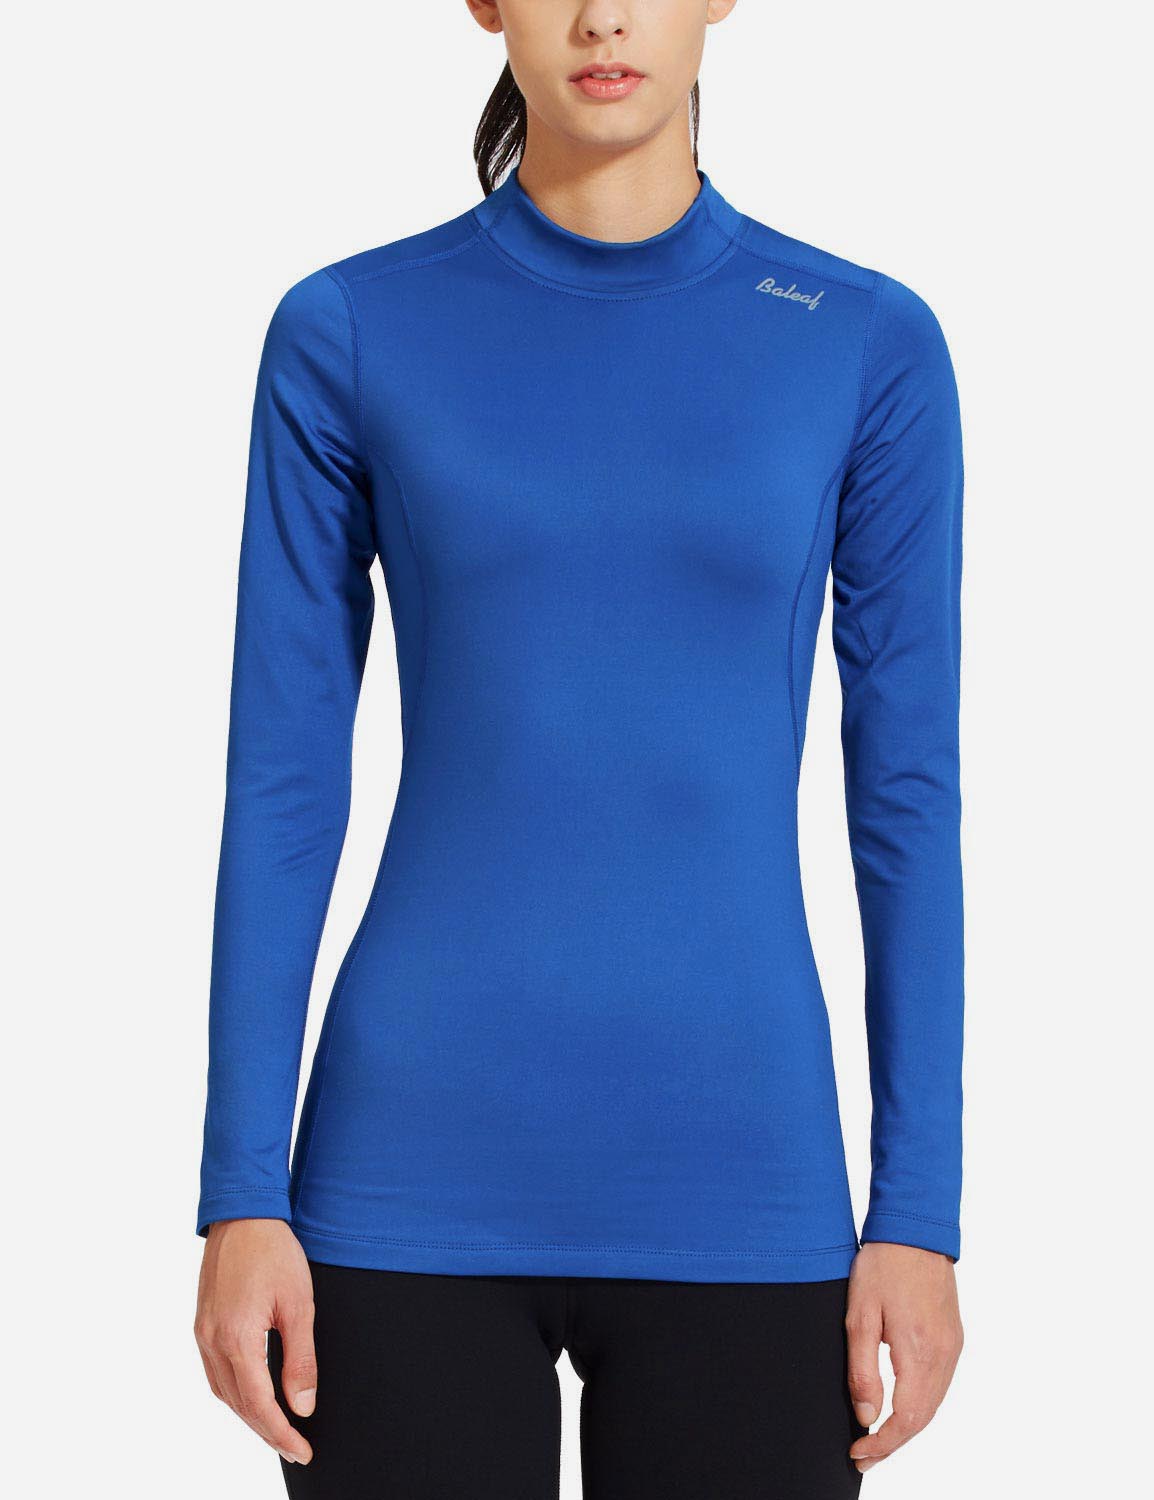 Baleaf Women's Basic Compression Mock-Neck Long Sleeved Shirt abd166 Blue Front